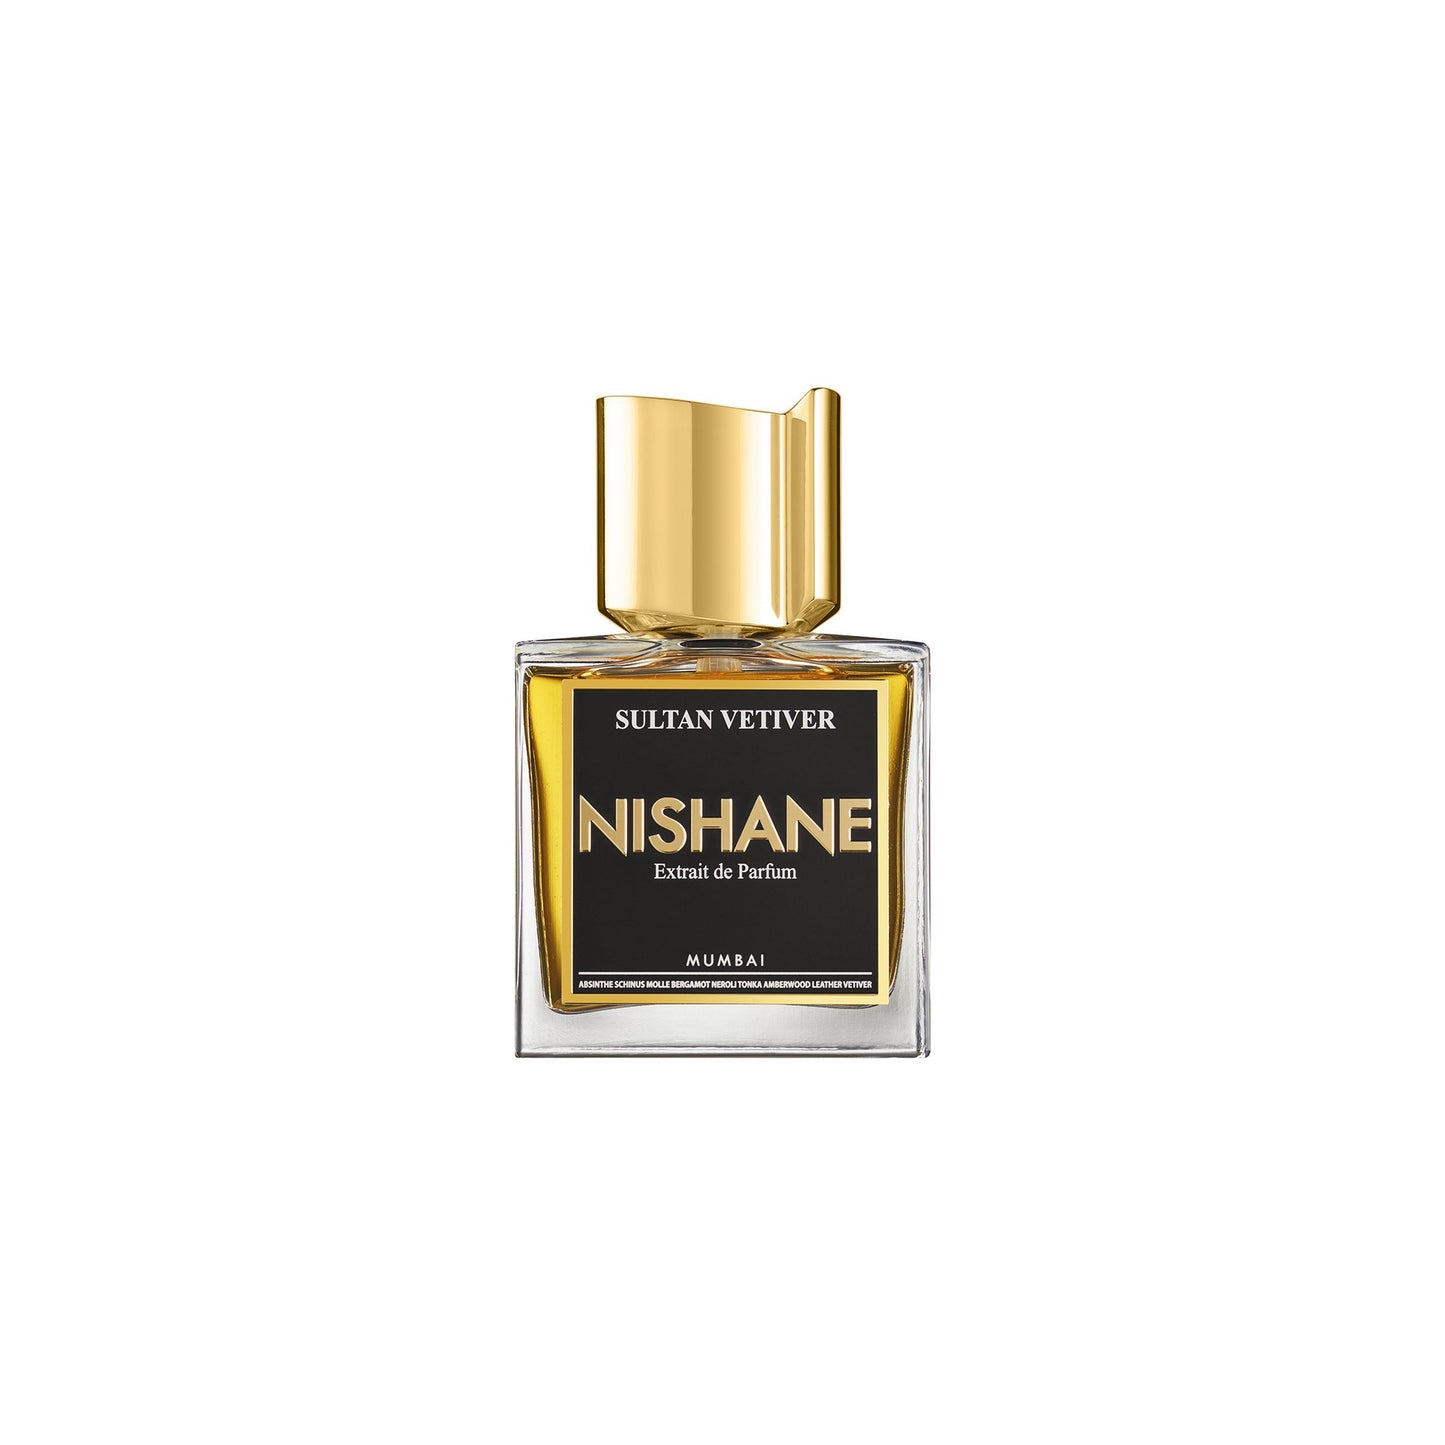 Sultan Vetiver  1.5ml Sample Vial - Extrait de Parfum